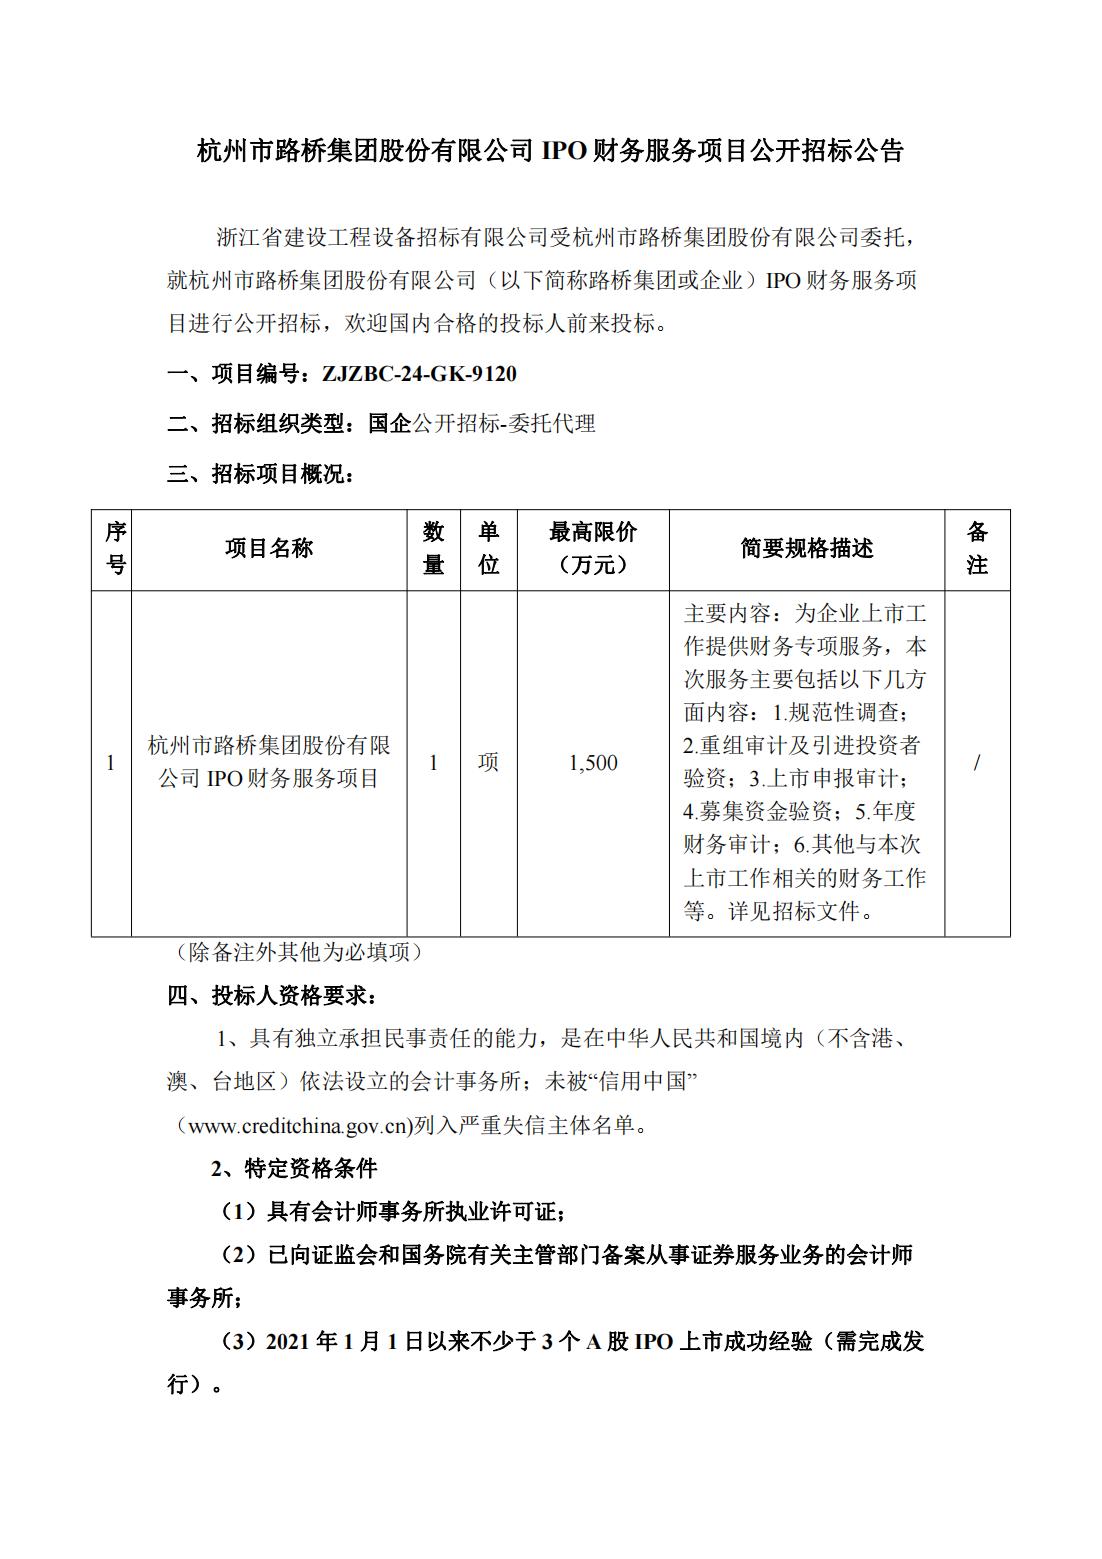 杭州市路桥集团股份有限公司IPO财务服务项目公开招标公告_00(1).jpg